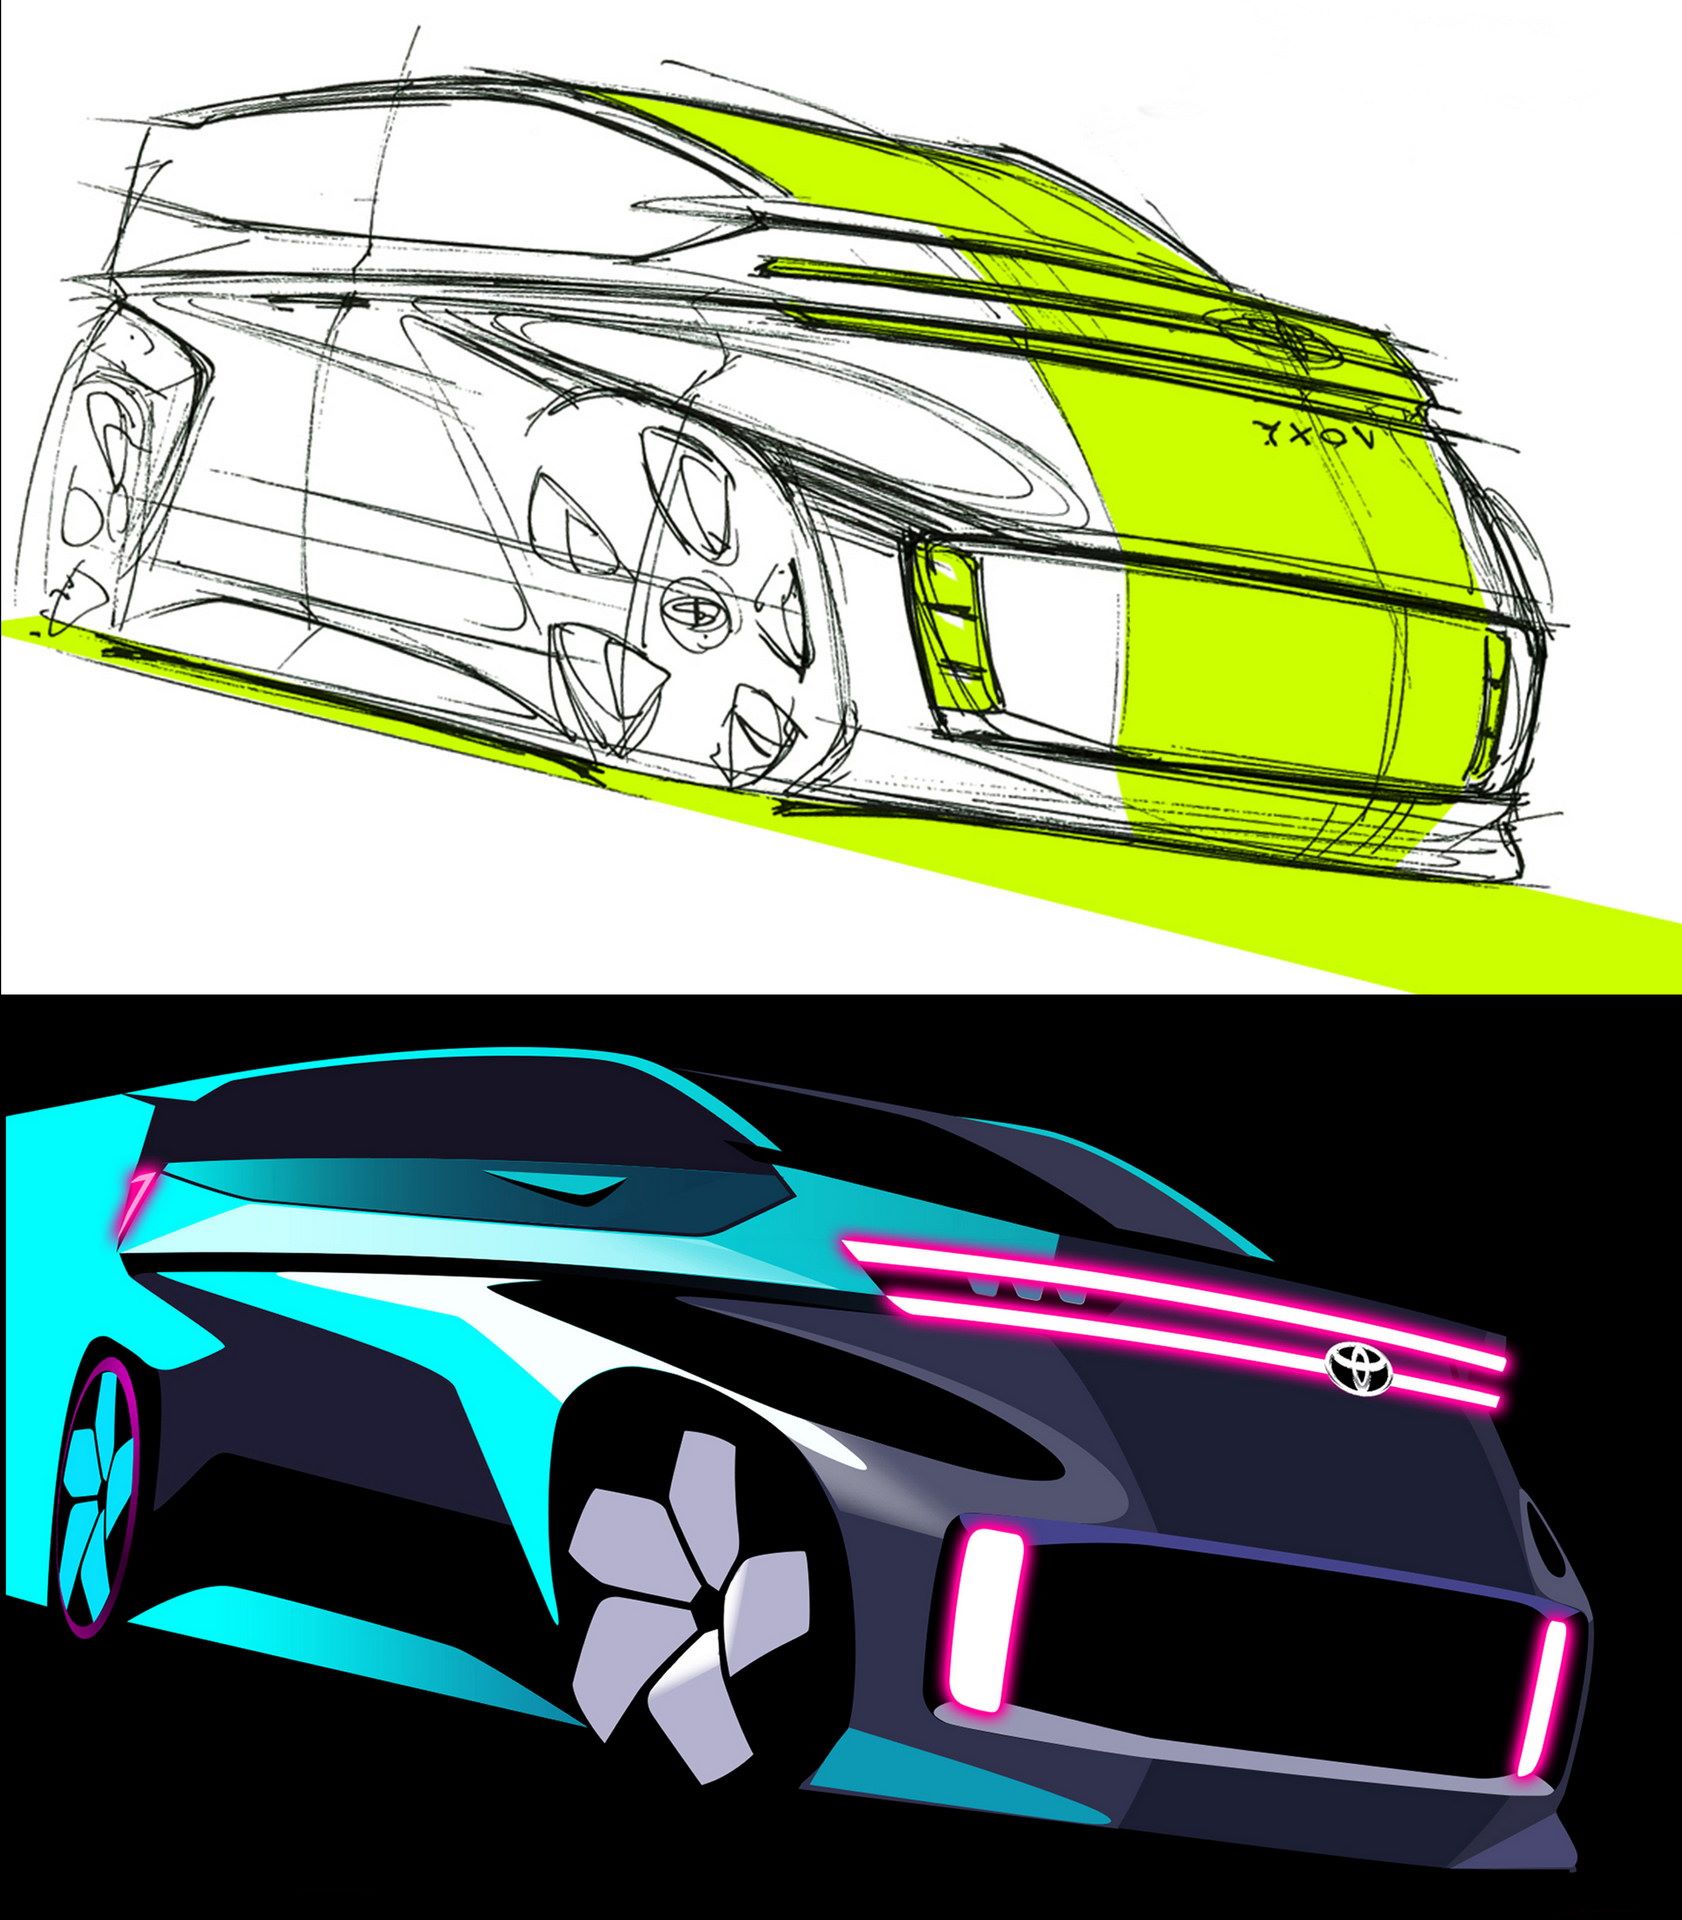 Toyota-Noah-Voxy-Sketches-15